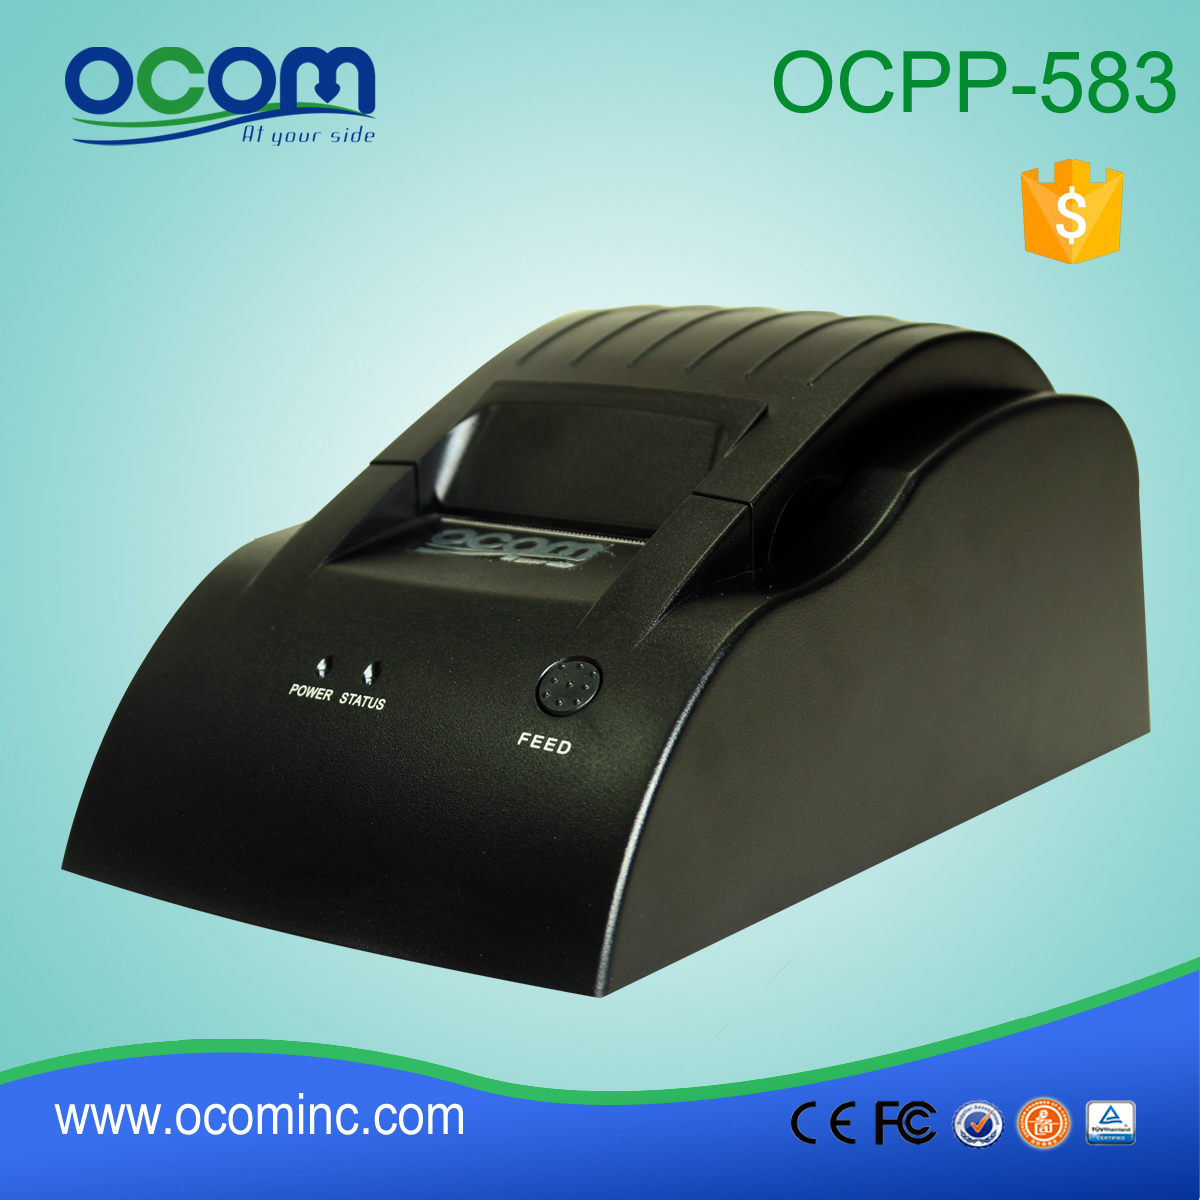 OCPP-583-L Interfaccia LAN per stampante termica per ricevute POS da 58 mm